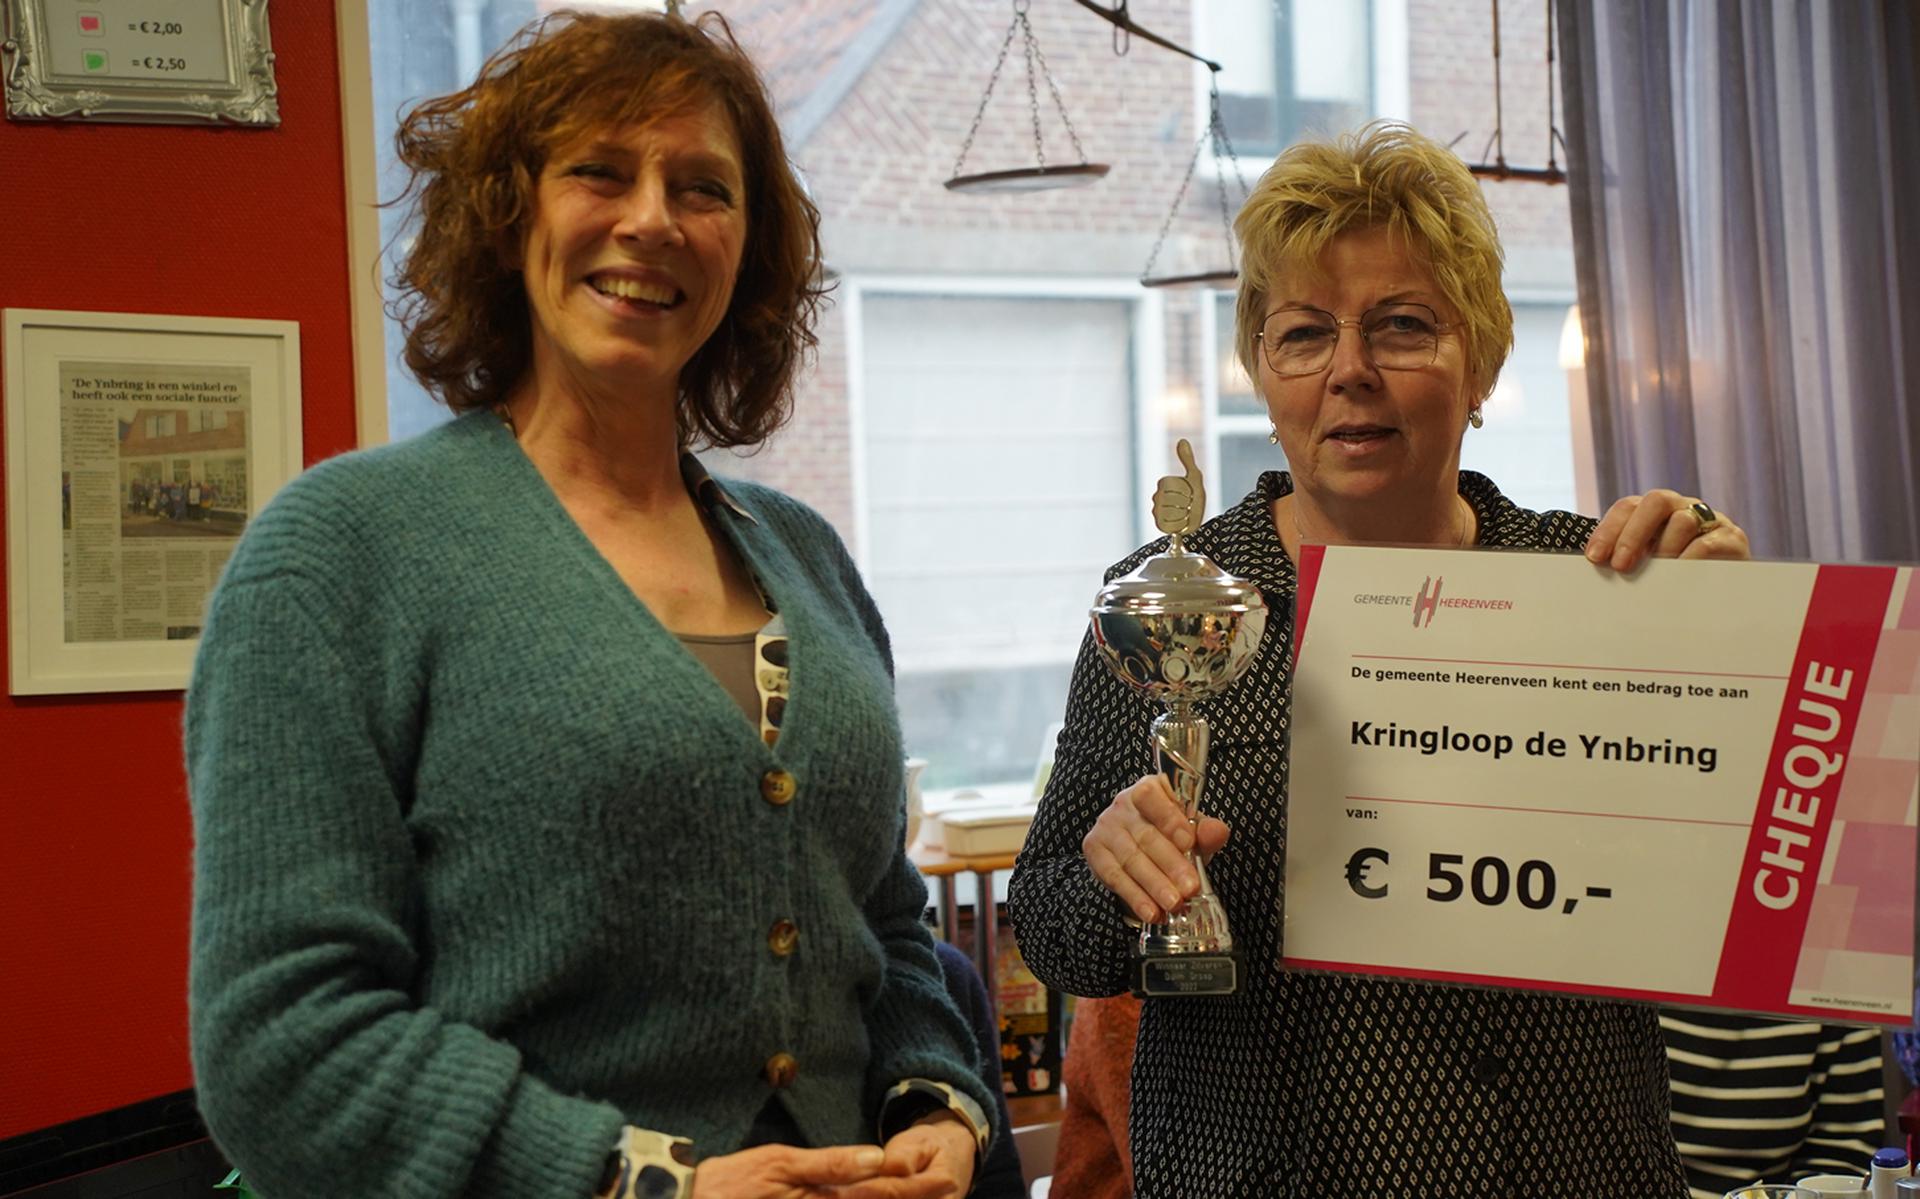 De prijs bij de groepen ging naar kringloopwinkel De Ynbring uit Aldeboarn, waar Jannie Jager coördinator is. Links wethouder Sybrig Sijtsma.